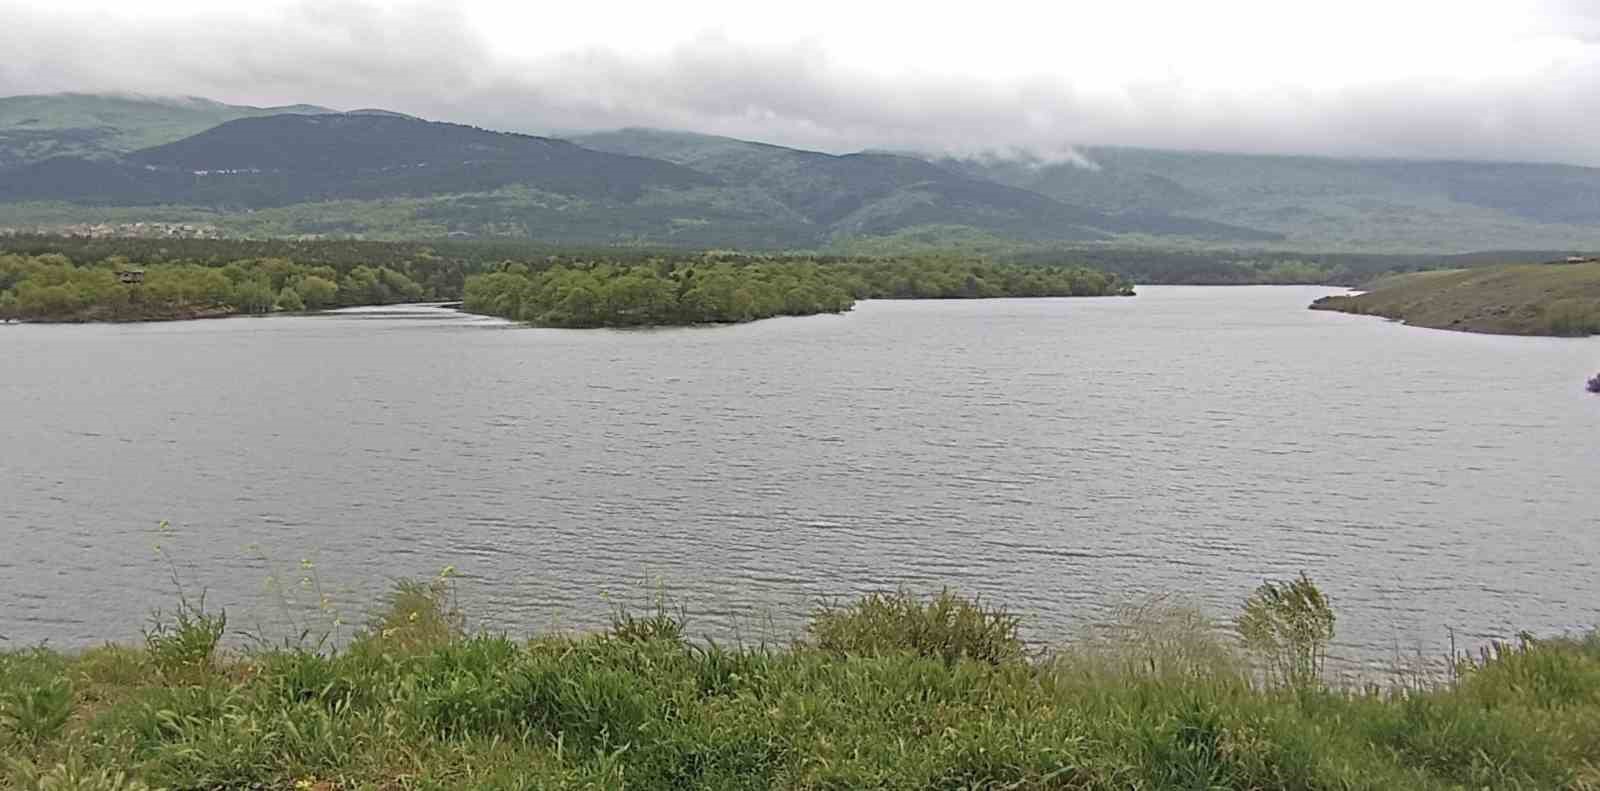 Kütahya’daki barajların doluluk oranları açıklandı
